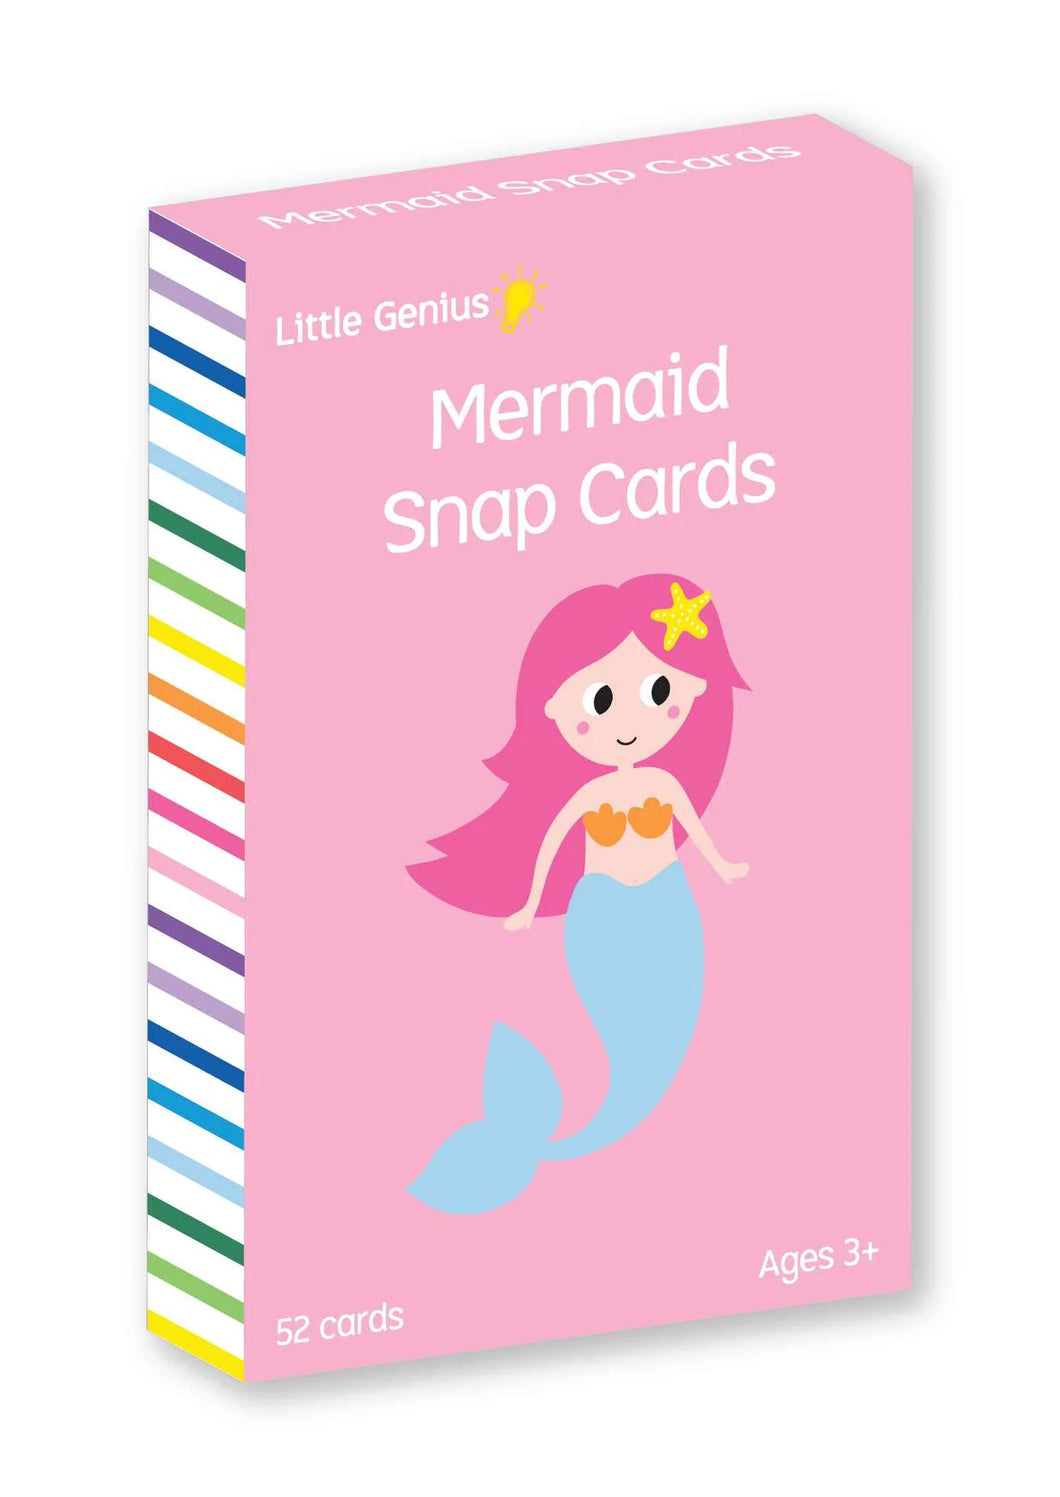 Mermaid Snap Cards - Little Genius Vol. 2